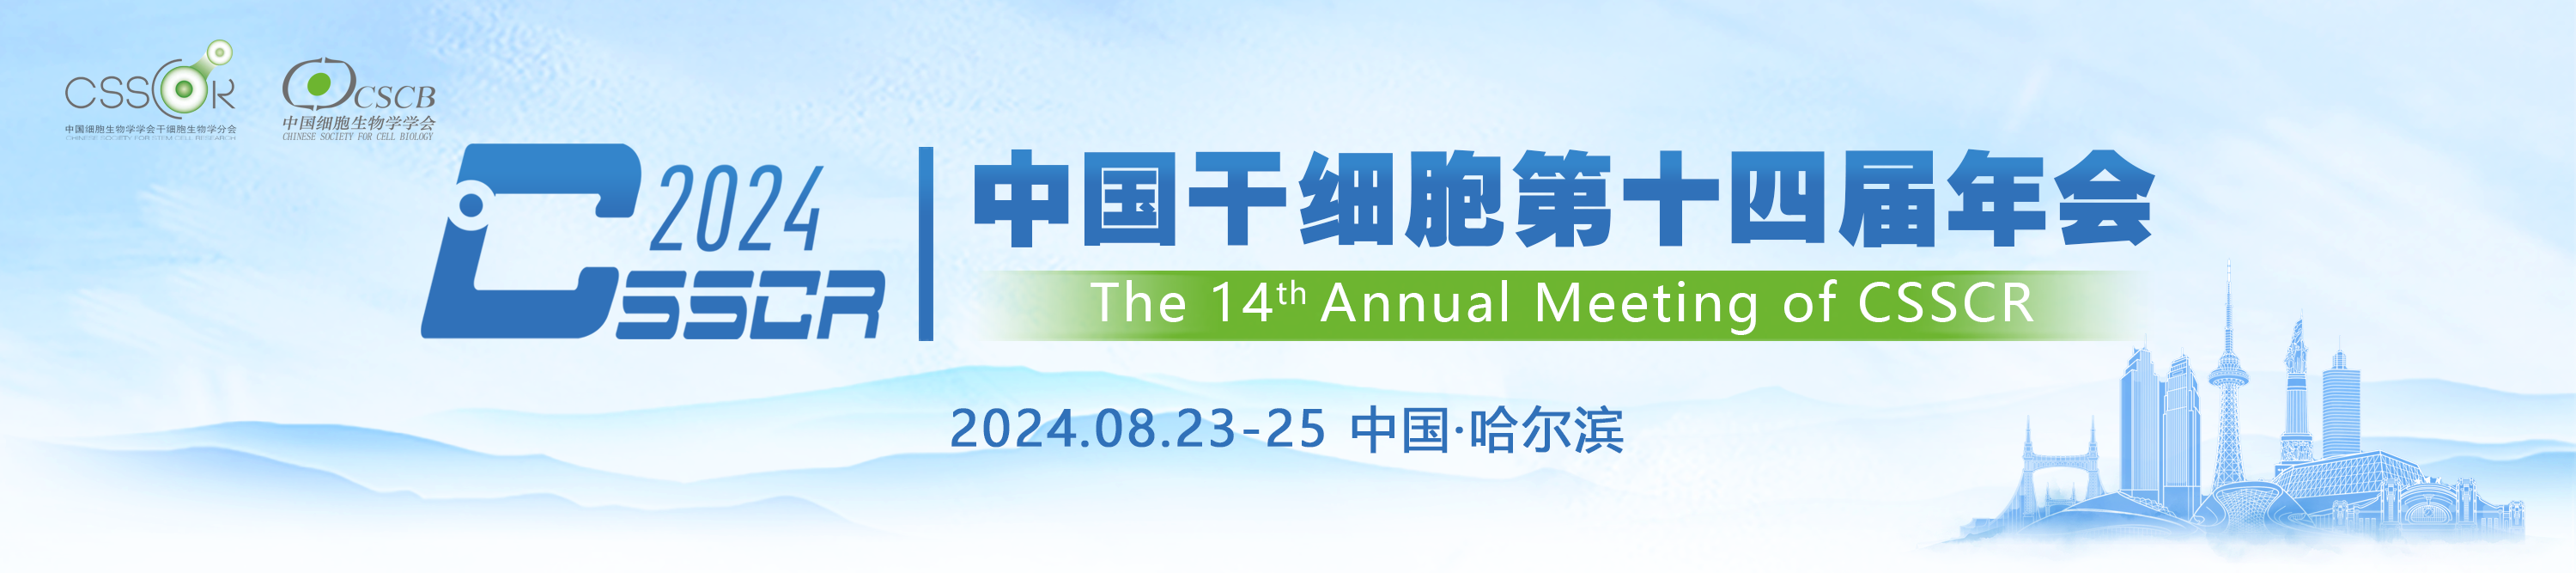 中国干细胞第十四届年会